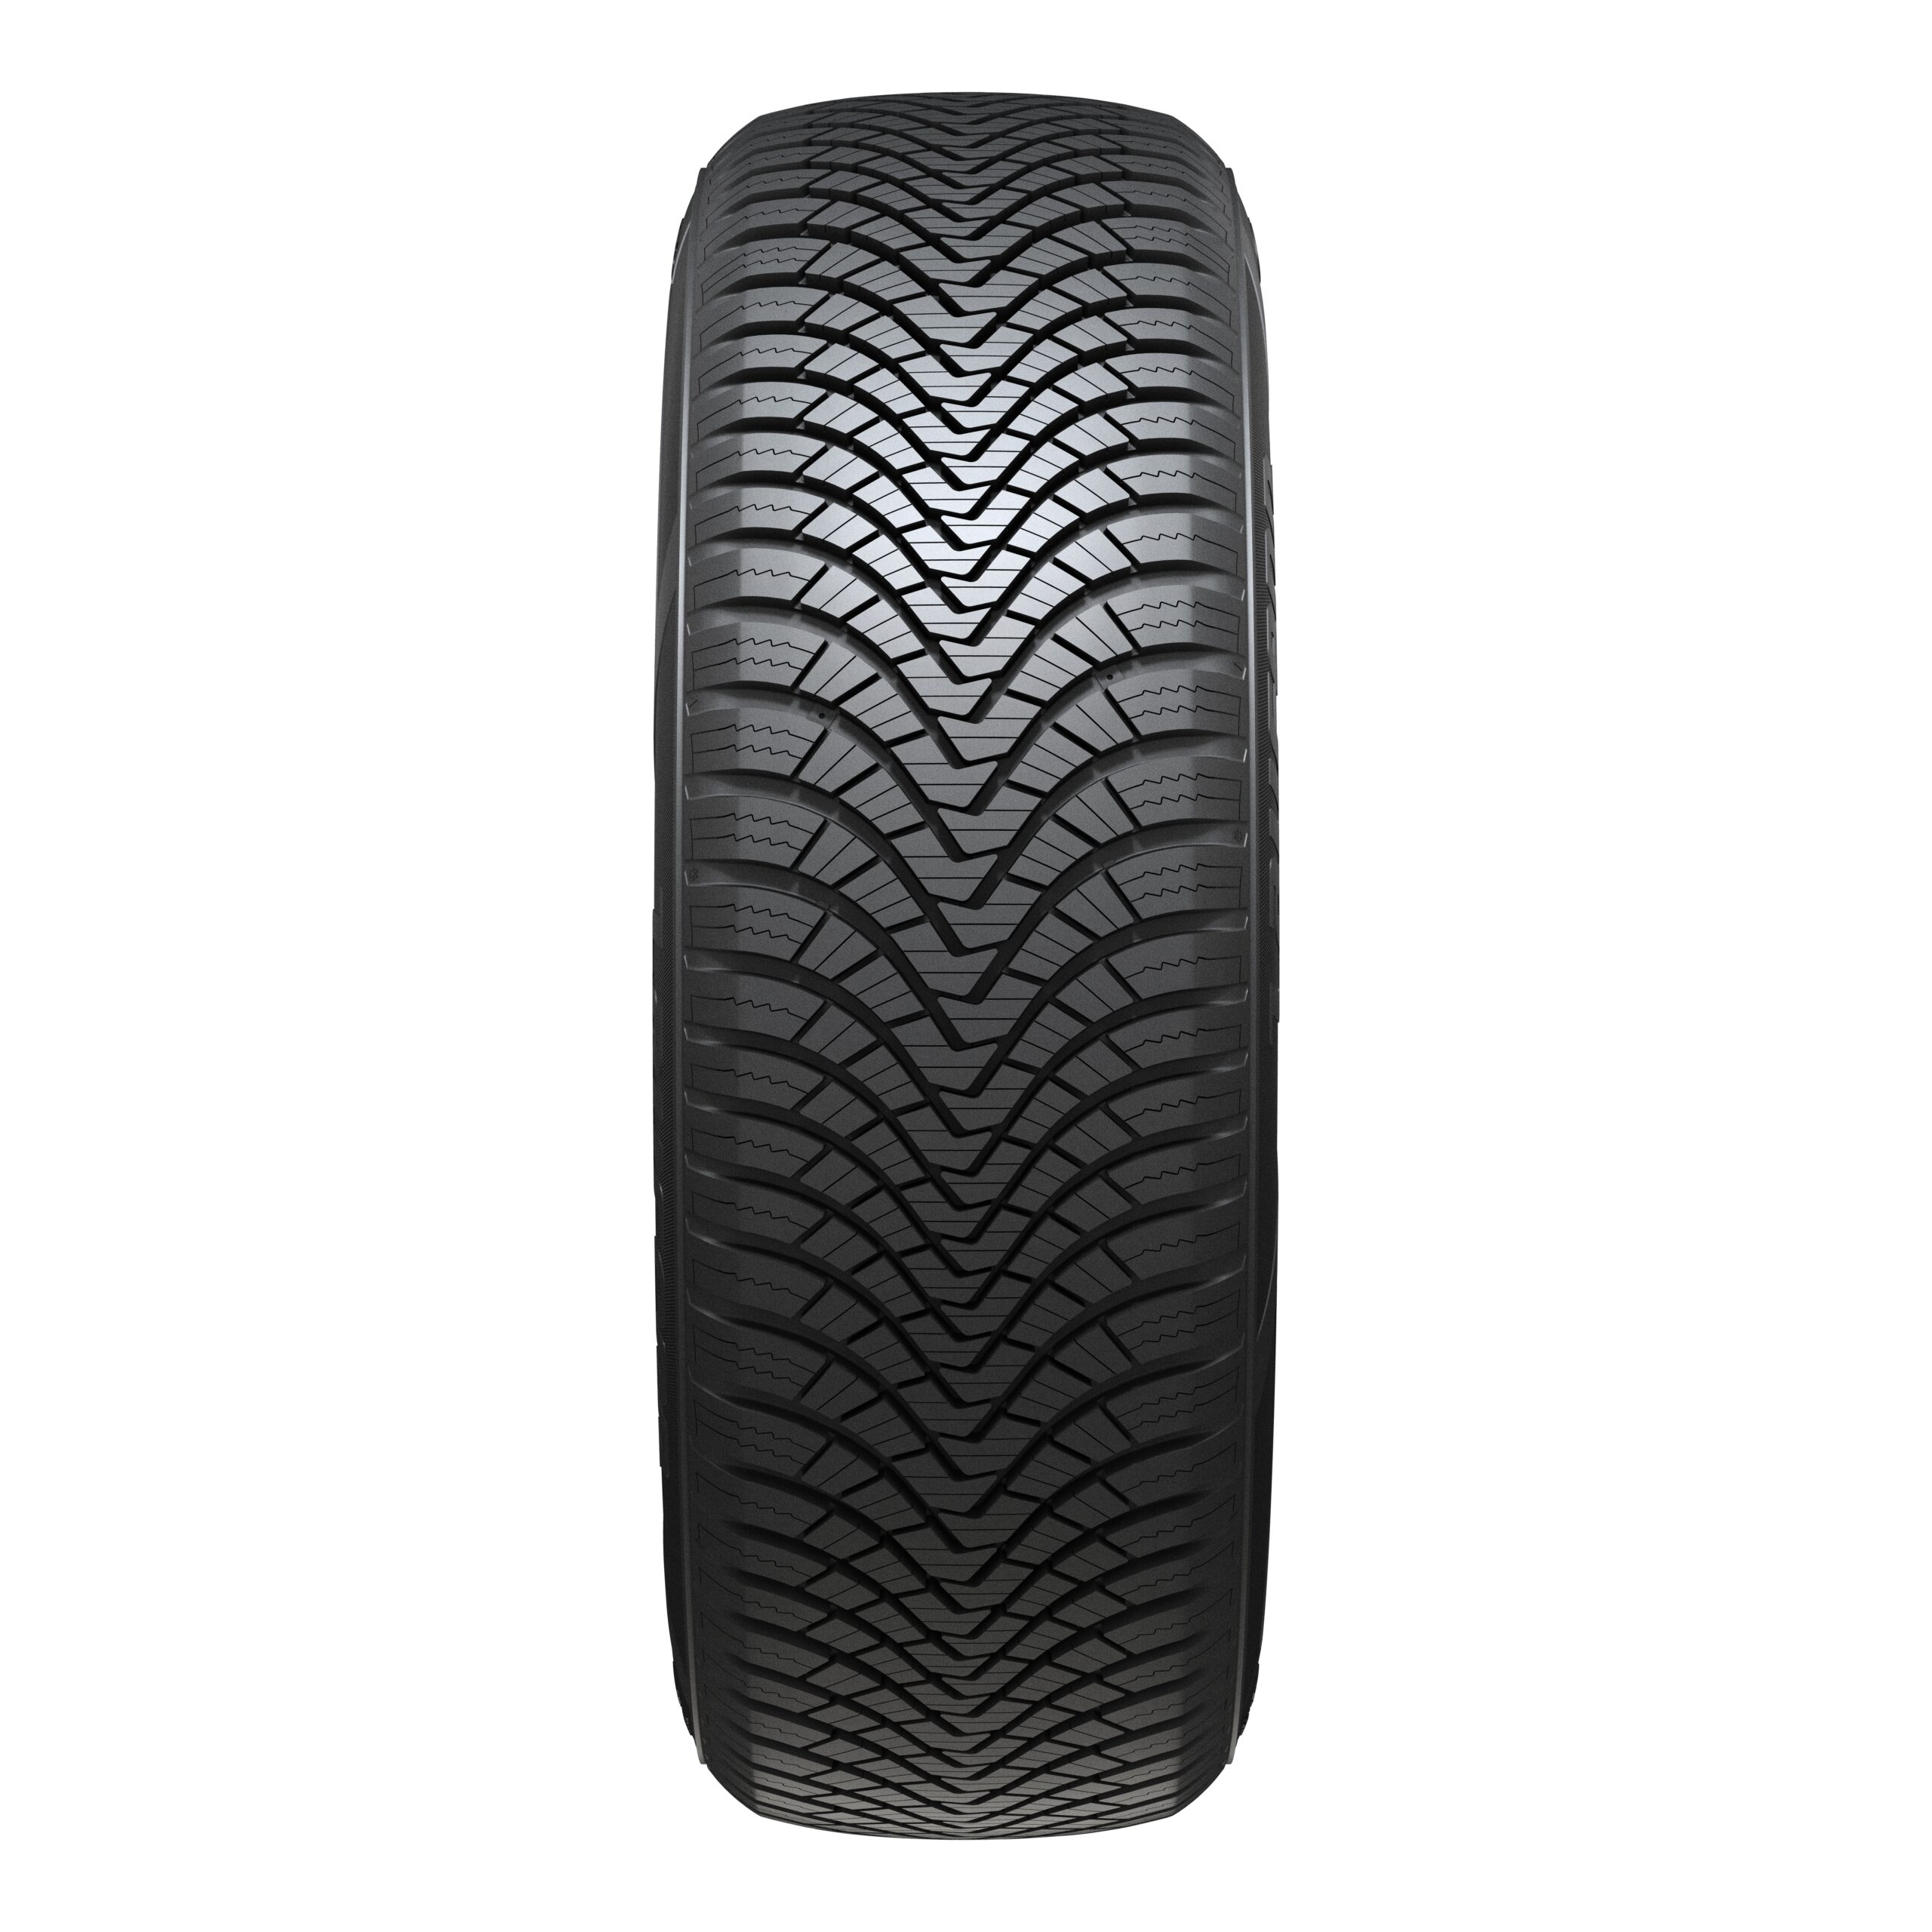 Laufenn G Fit 4s Lh71 | What Tyre | Independent tyre comparison | Autoreifen